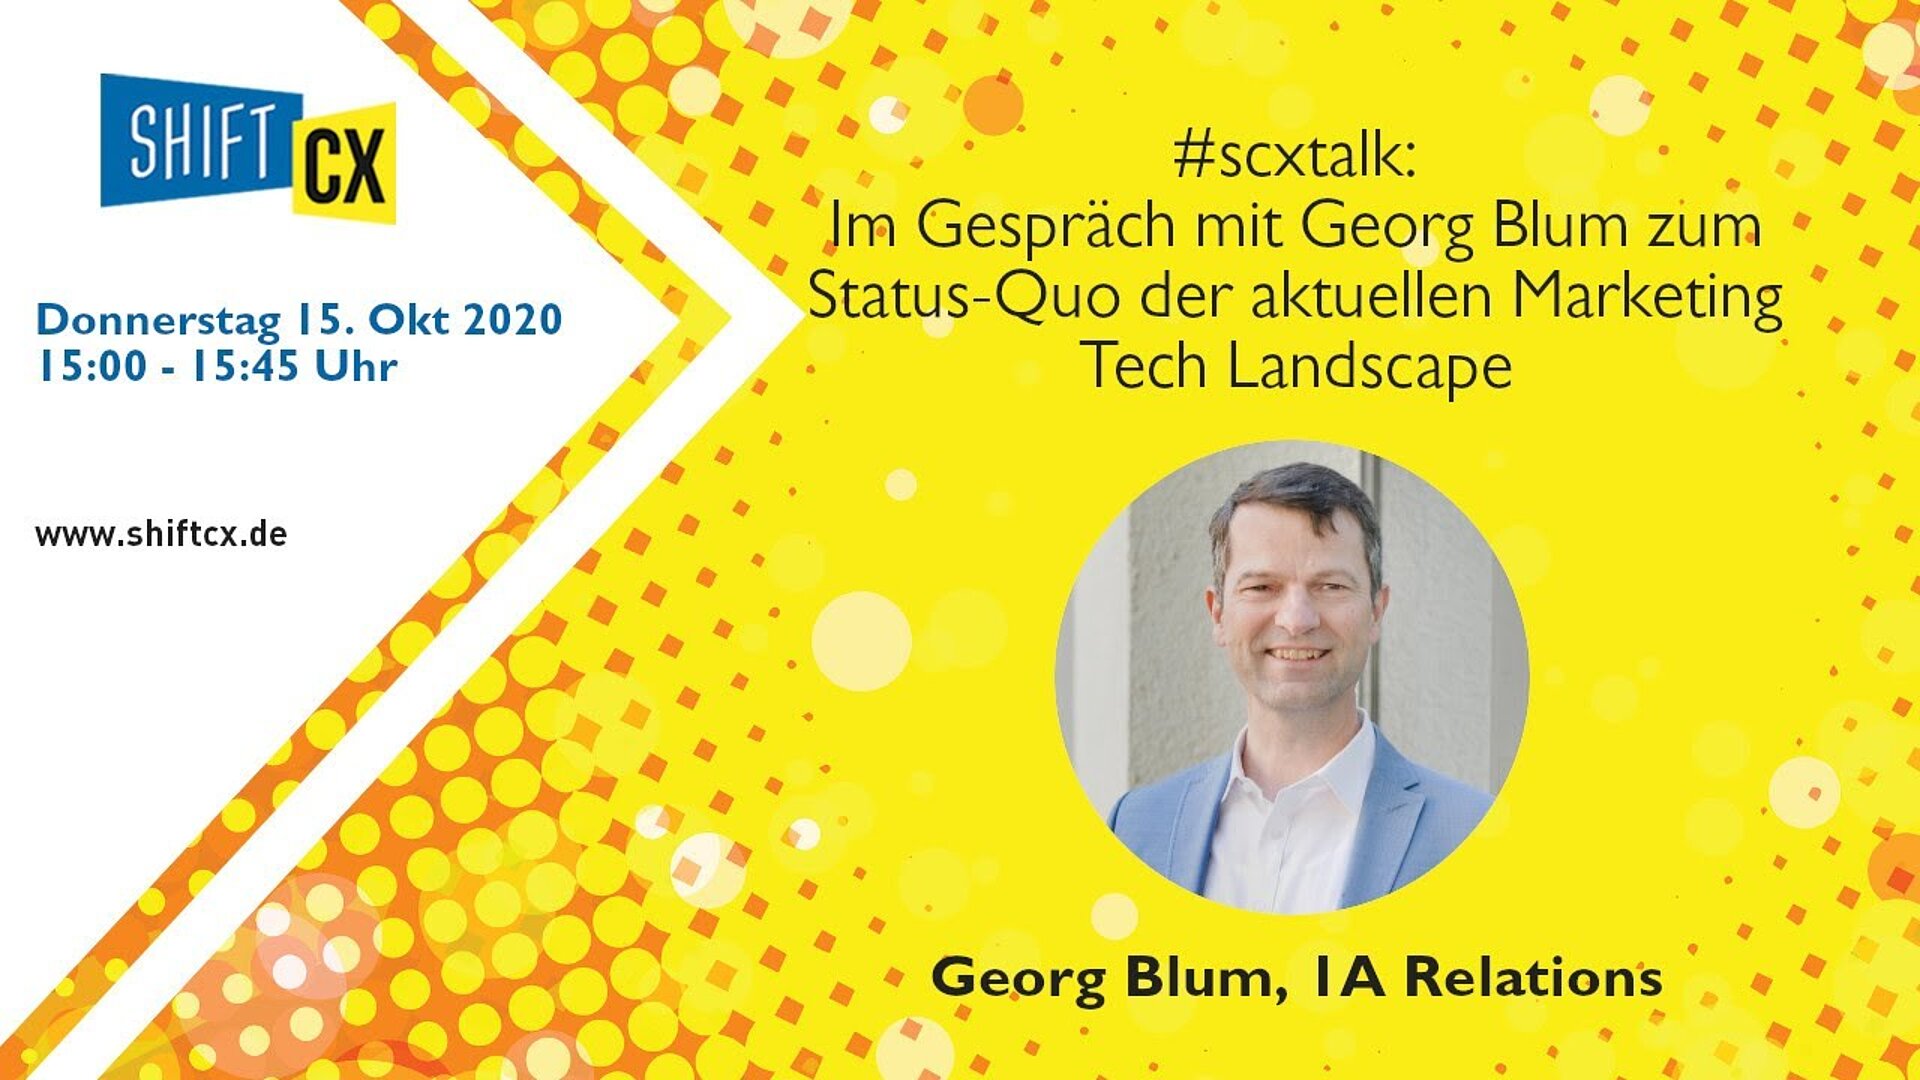 Im Gespräch mit Georg Blum zum Status-Quo der aktuellen Marketing Tech Landscape